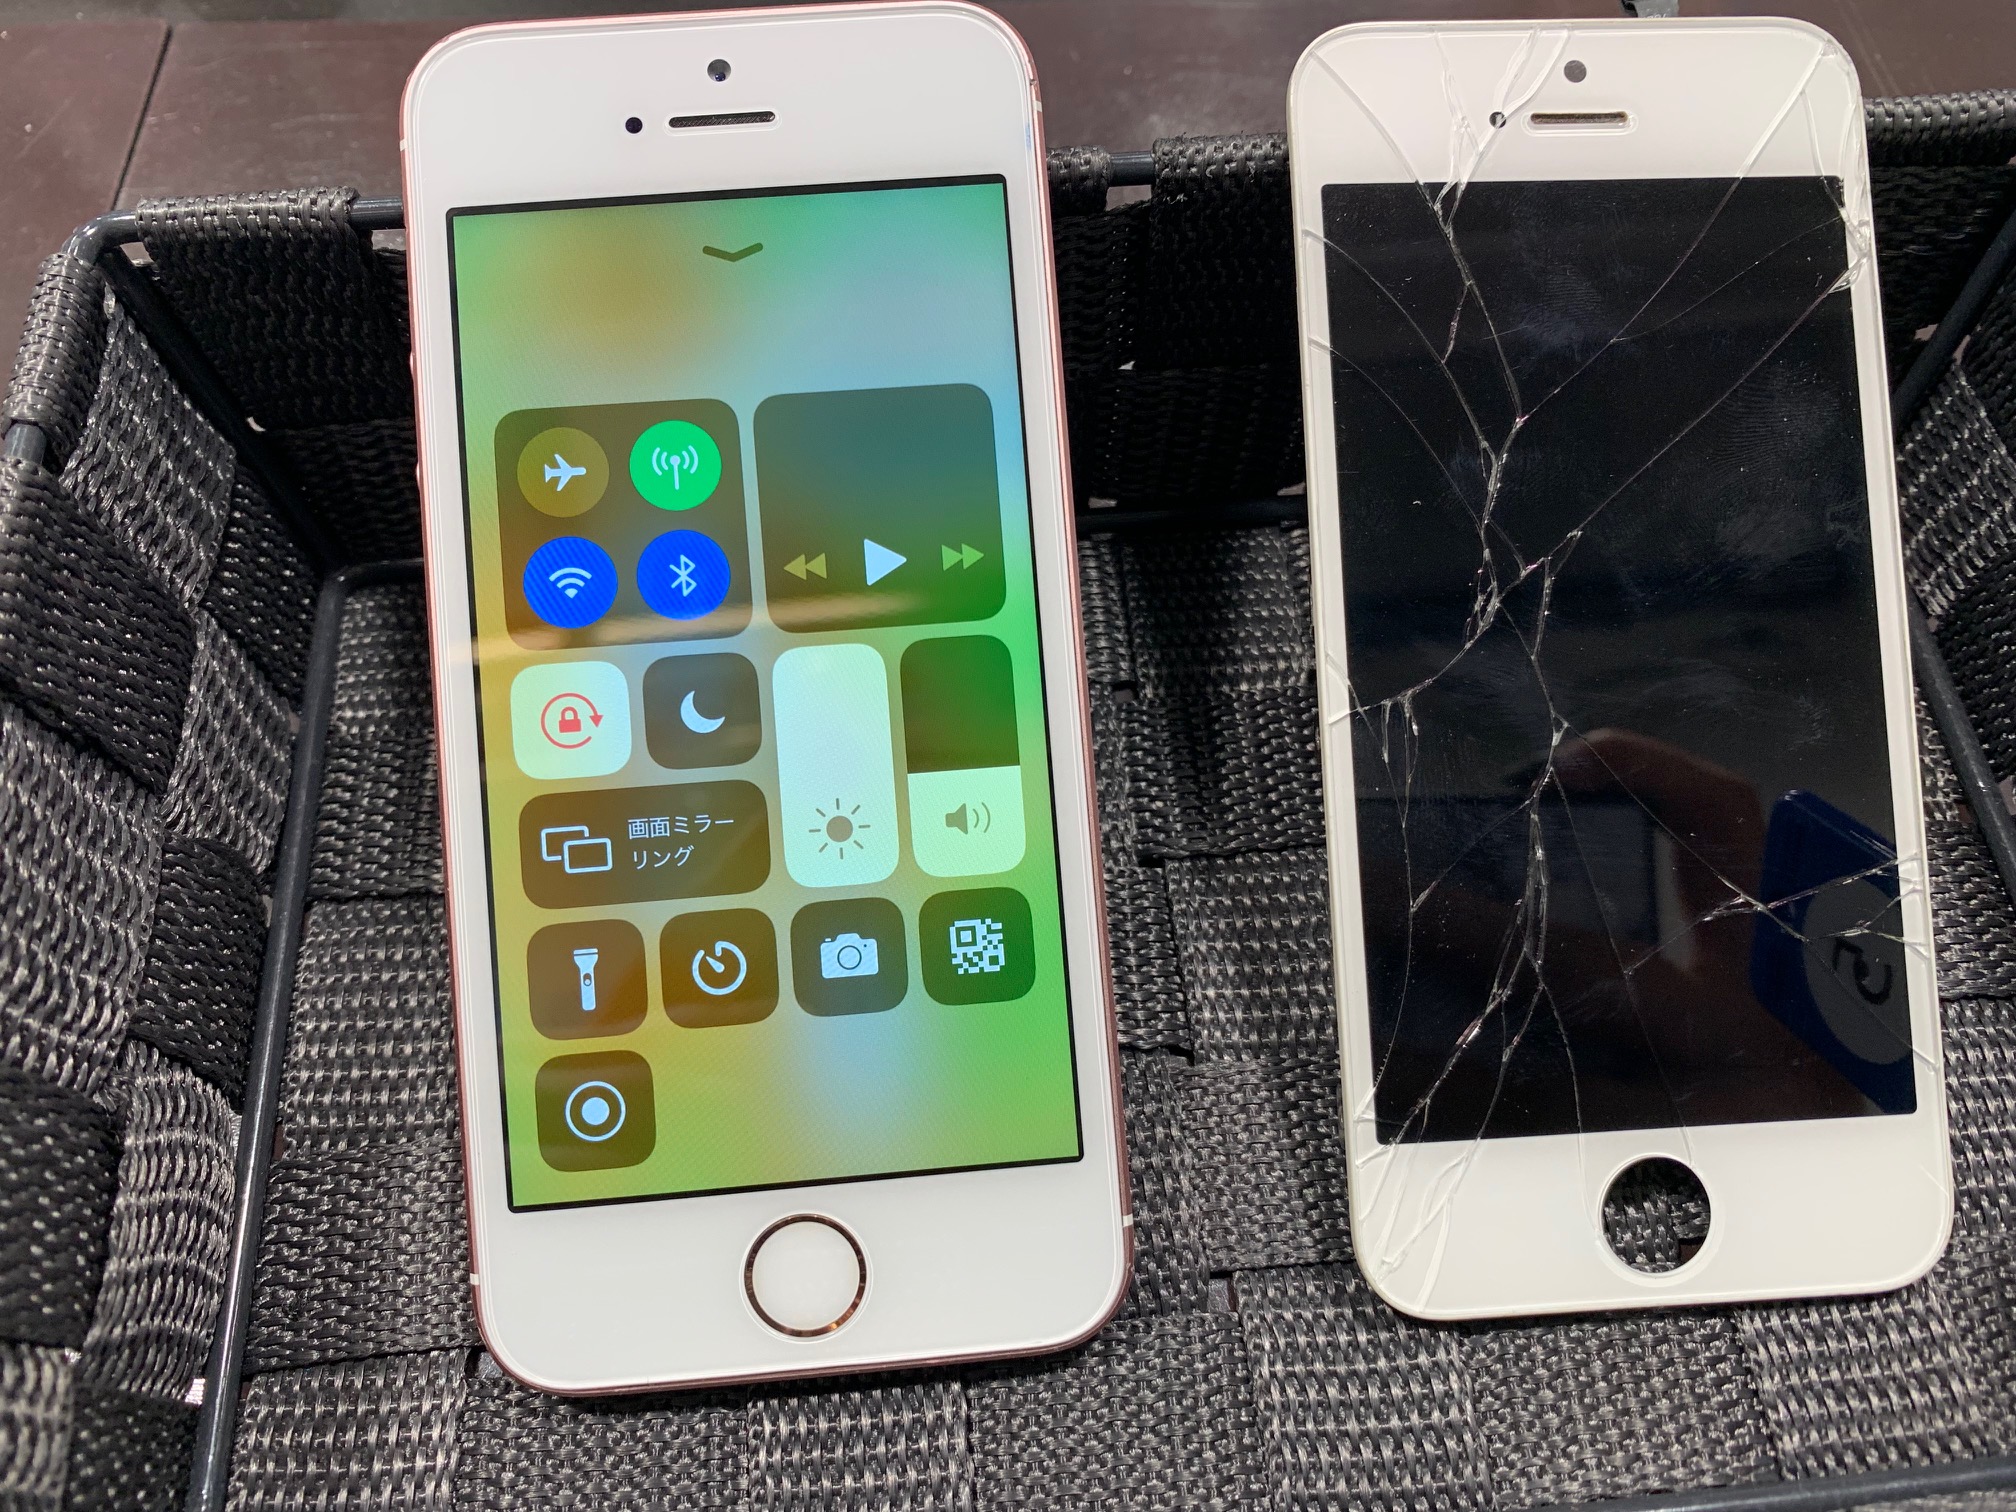 ガラス破損パネル交換[iPhoneSE・液晶ガラス交換修理]中のデータはそのまま最短30分で返却🎶修理後保証付きの大型ショッピングモール内2階アイフォン修理専門店スマートクール☎TEL：072-767-1011